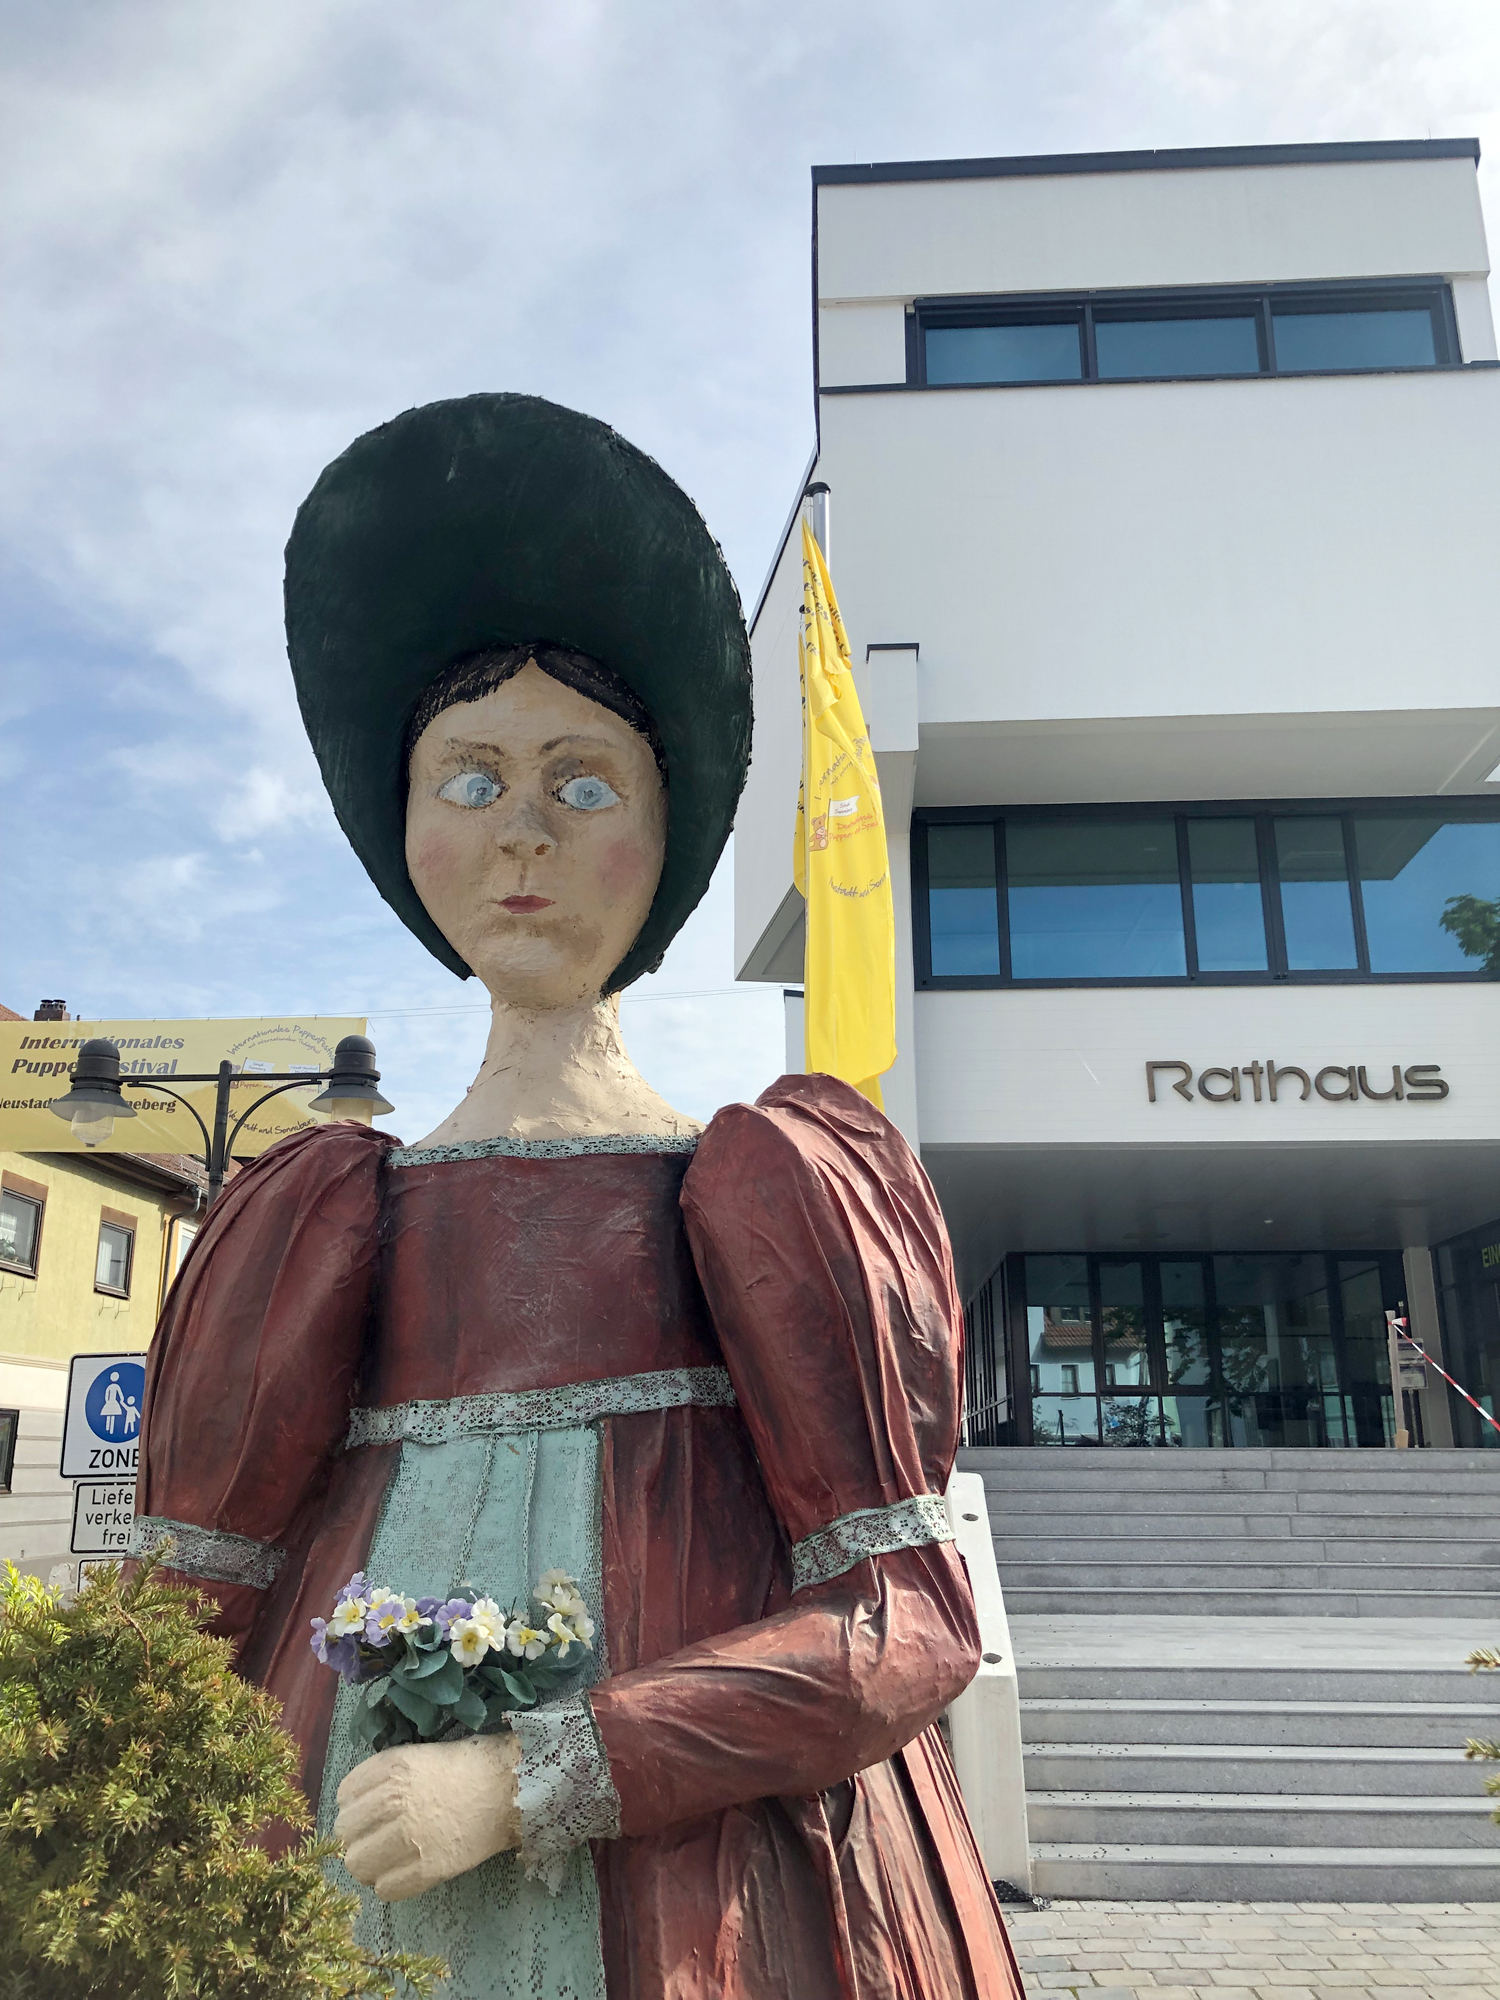 So ernst wie die Dame guckt und etwas schräg schaut ist die übergroße Puppe vor dem Rathaus in Neustadt bei Coburg nicht. Eben Kunst - vor dem Rathaus. (Bild links) 